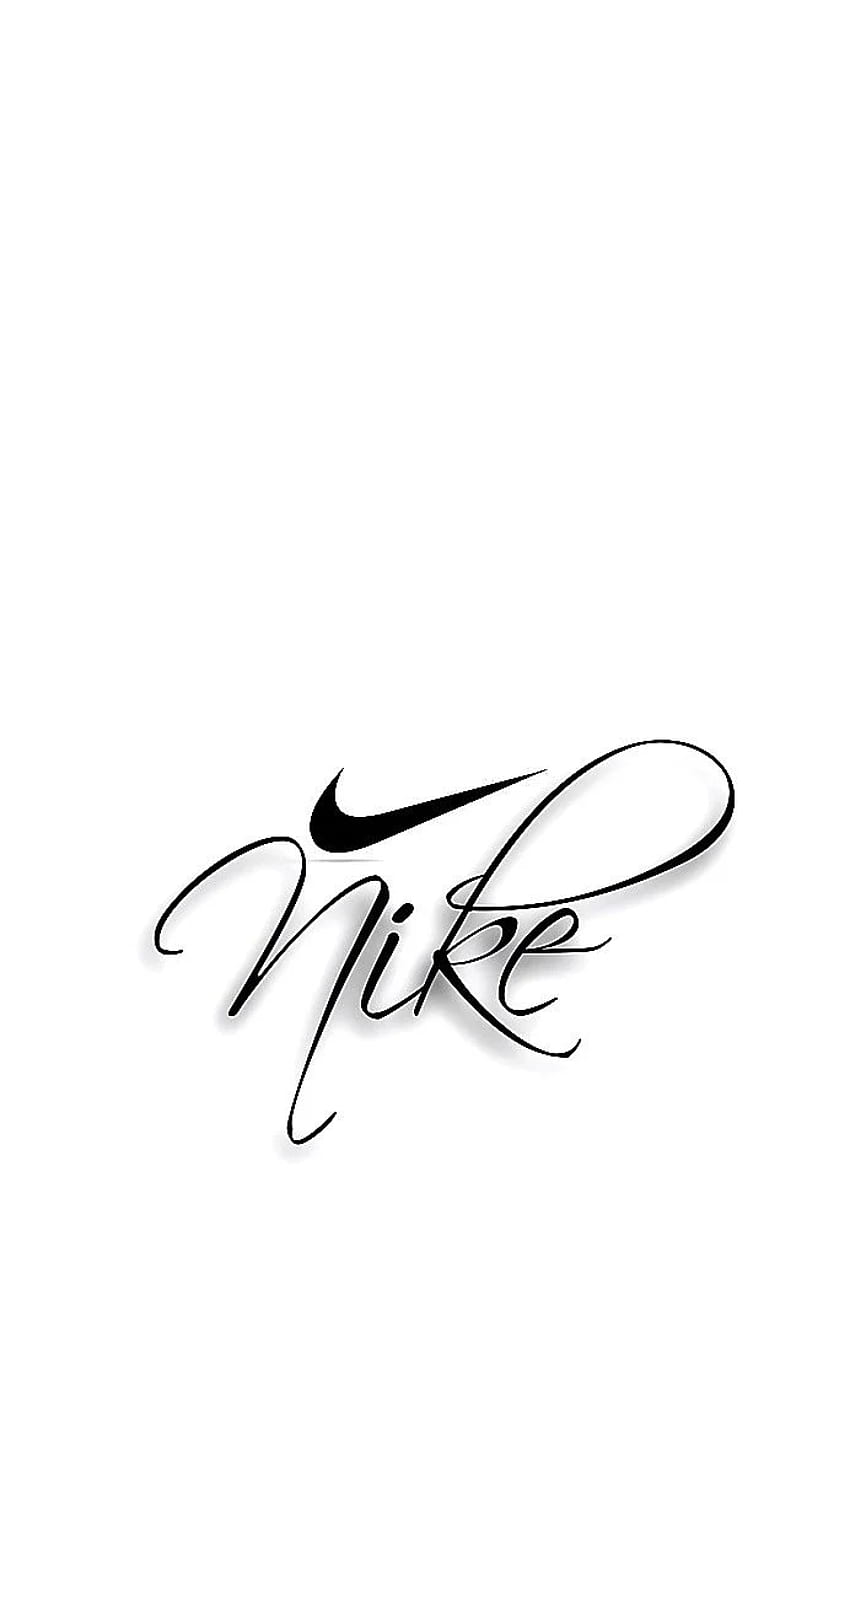 Nghệ thuật Nike mang lại sự sáng tạo và tinh thần khác biệt trong việc sử dụng quần áo và giày dép. Hãy cùng khám phá mọi tác phẩm của nghệ thuật Nike để trải nghiệm sự độc đáo này.